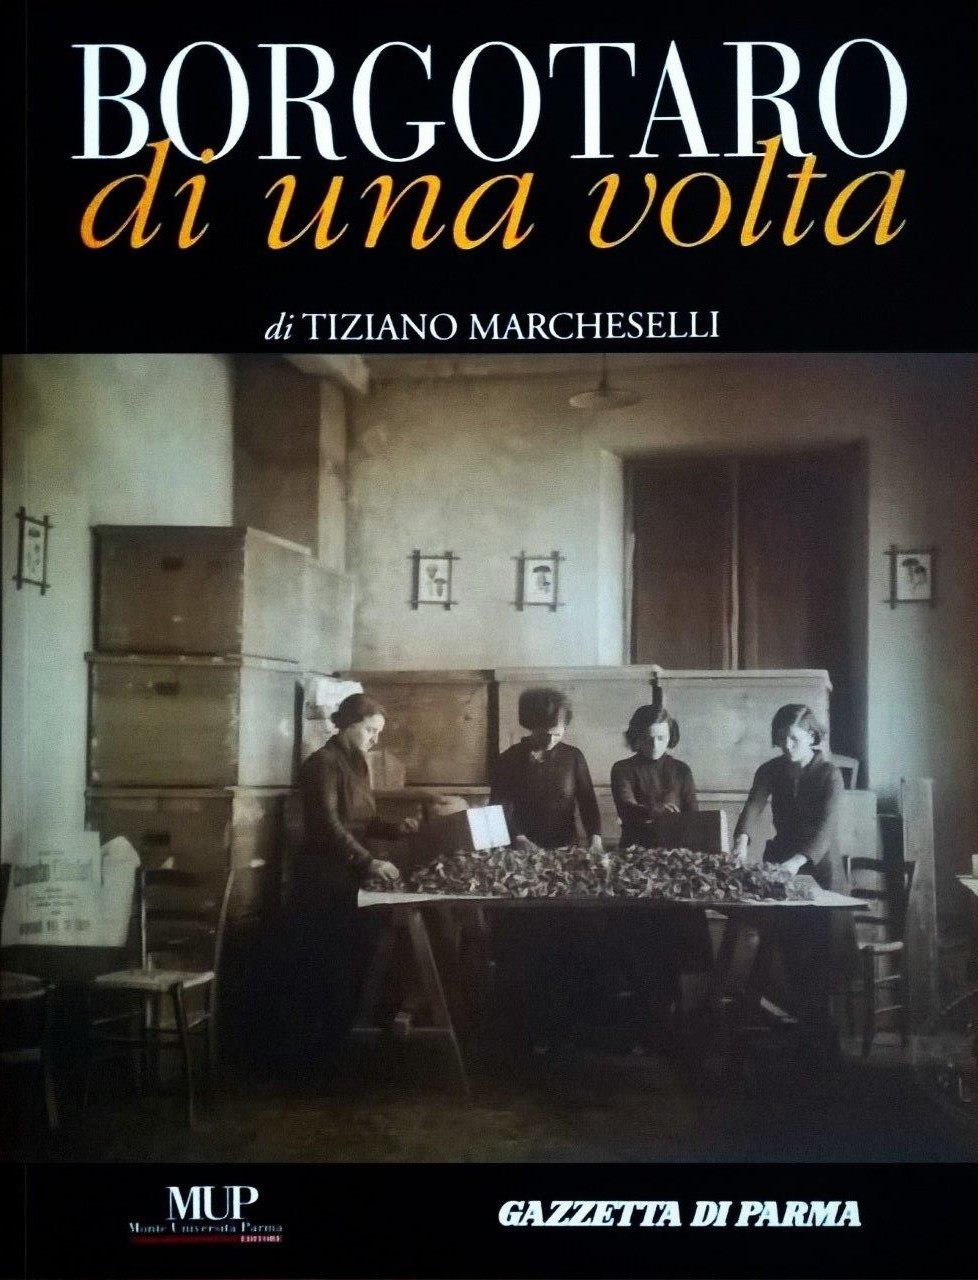 Tiziano Marcheselli, Borgotaro di una volta, Parma, Mup Editore / Gazzetta di Parma (Stamperia), 2009, prefazione di Diego Rossi e Salvatorangelo Oppo